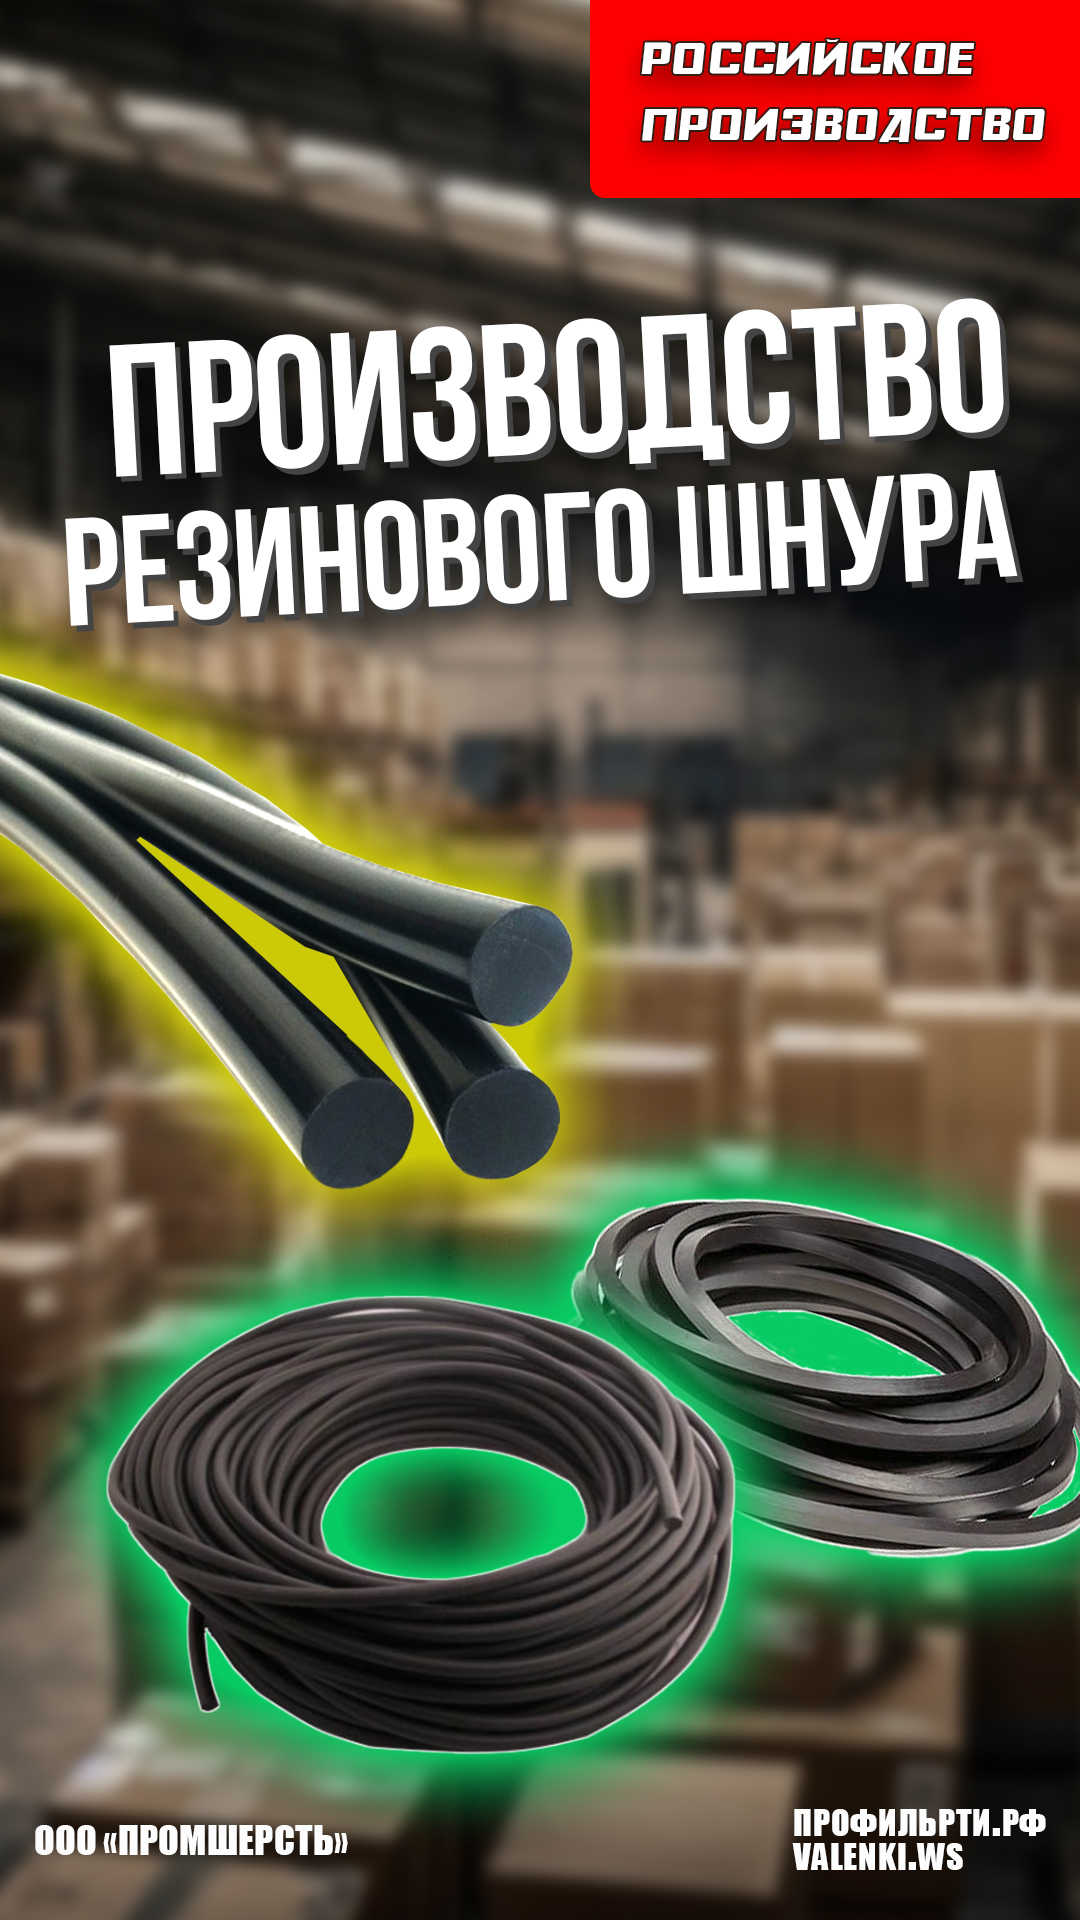 Изготовление резиновых шнуров ГОСТ 6467-79 | Профильрти.рф